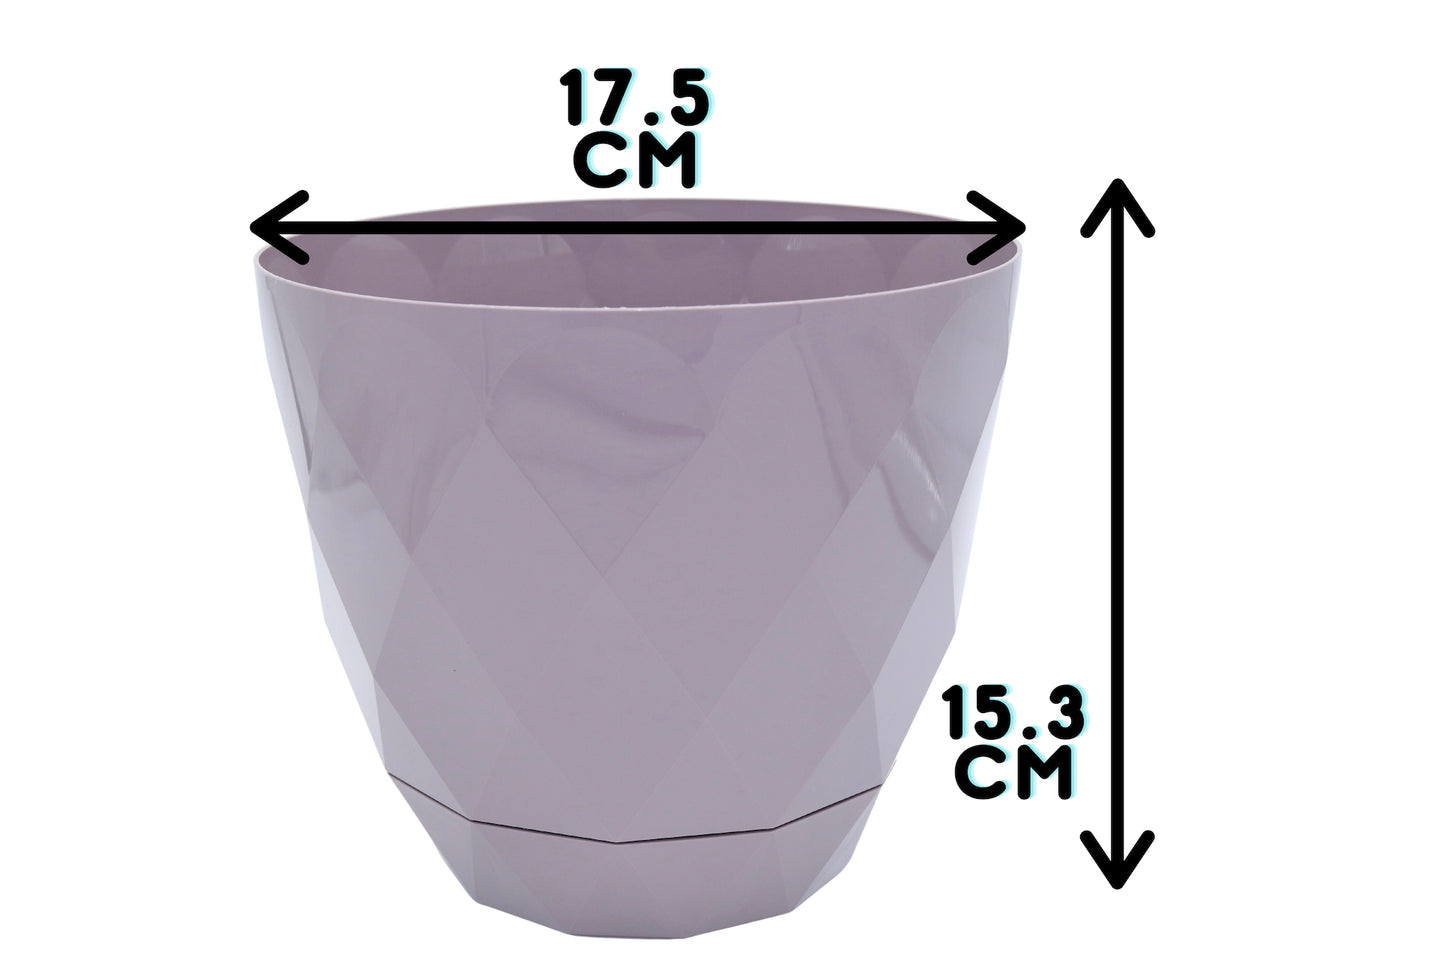 17.cm plant pot measurements for purple color